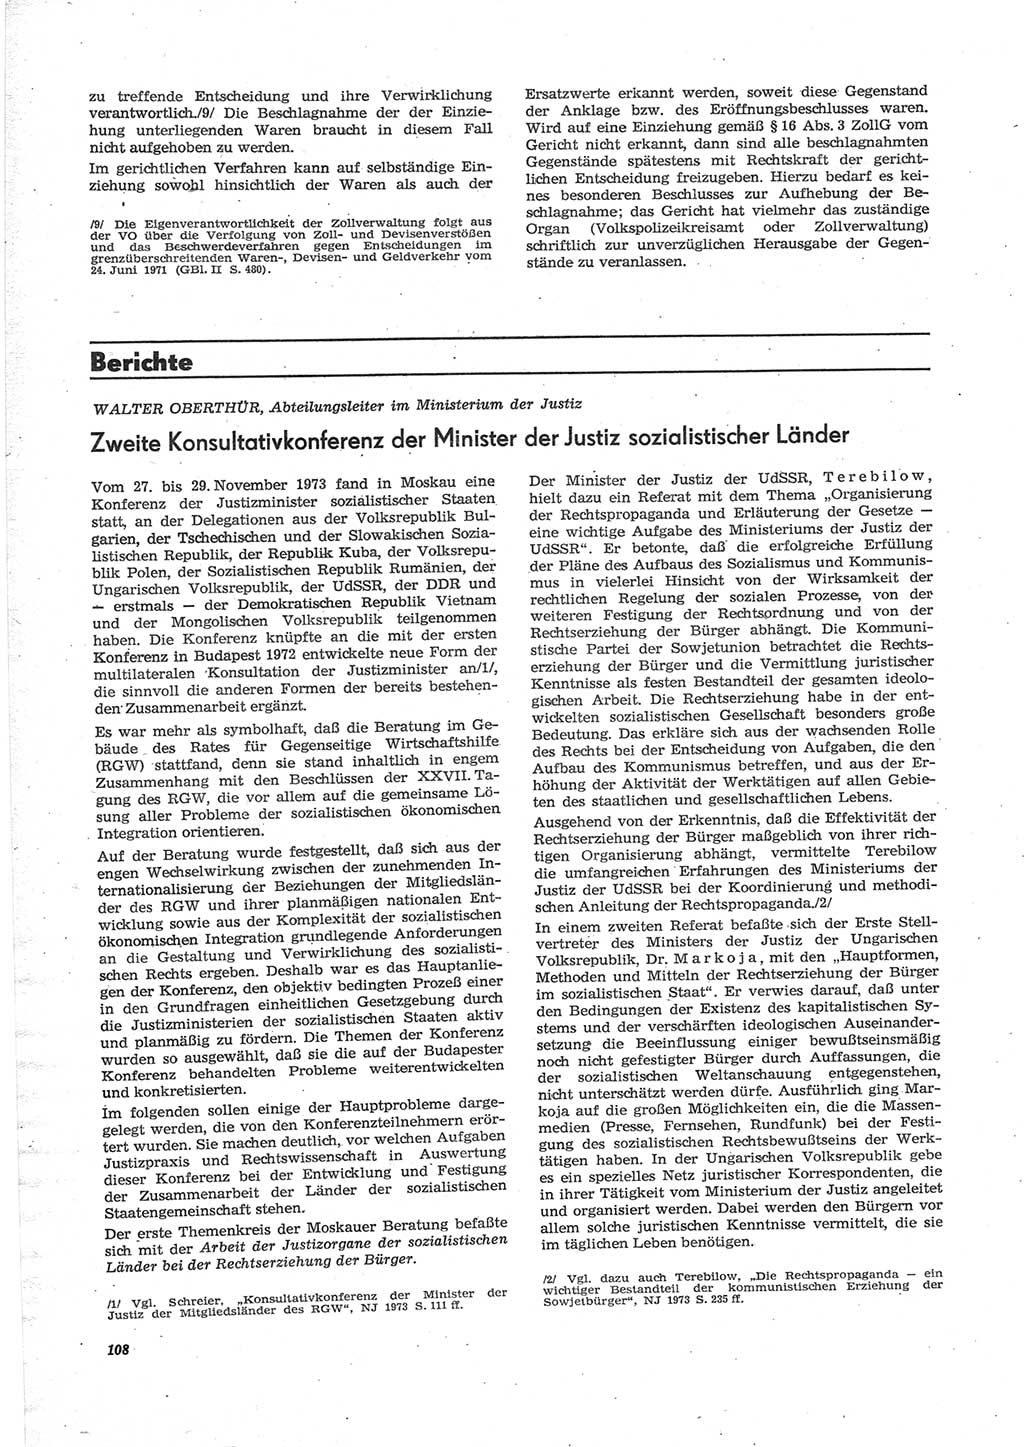 Neue Justiz (NJ), Zeitschrift für Recht und Rechtswissenschaft [Deutsche Demokratische Republik (DDR)], 28. Jahrgang 1974, Seite 108 (NJ DDR 1974, S. 108)